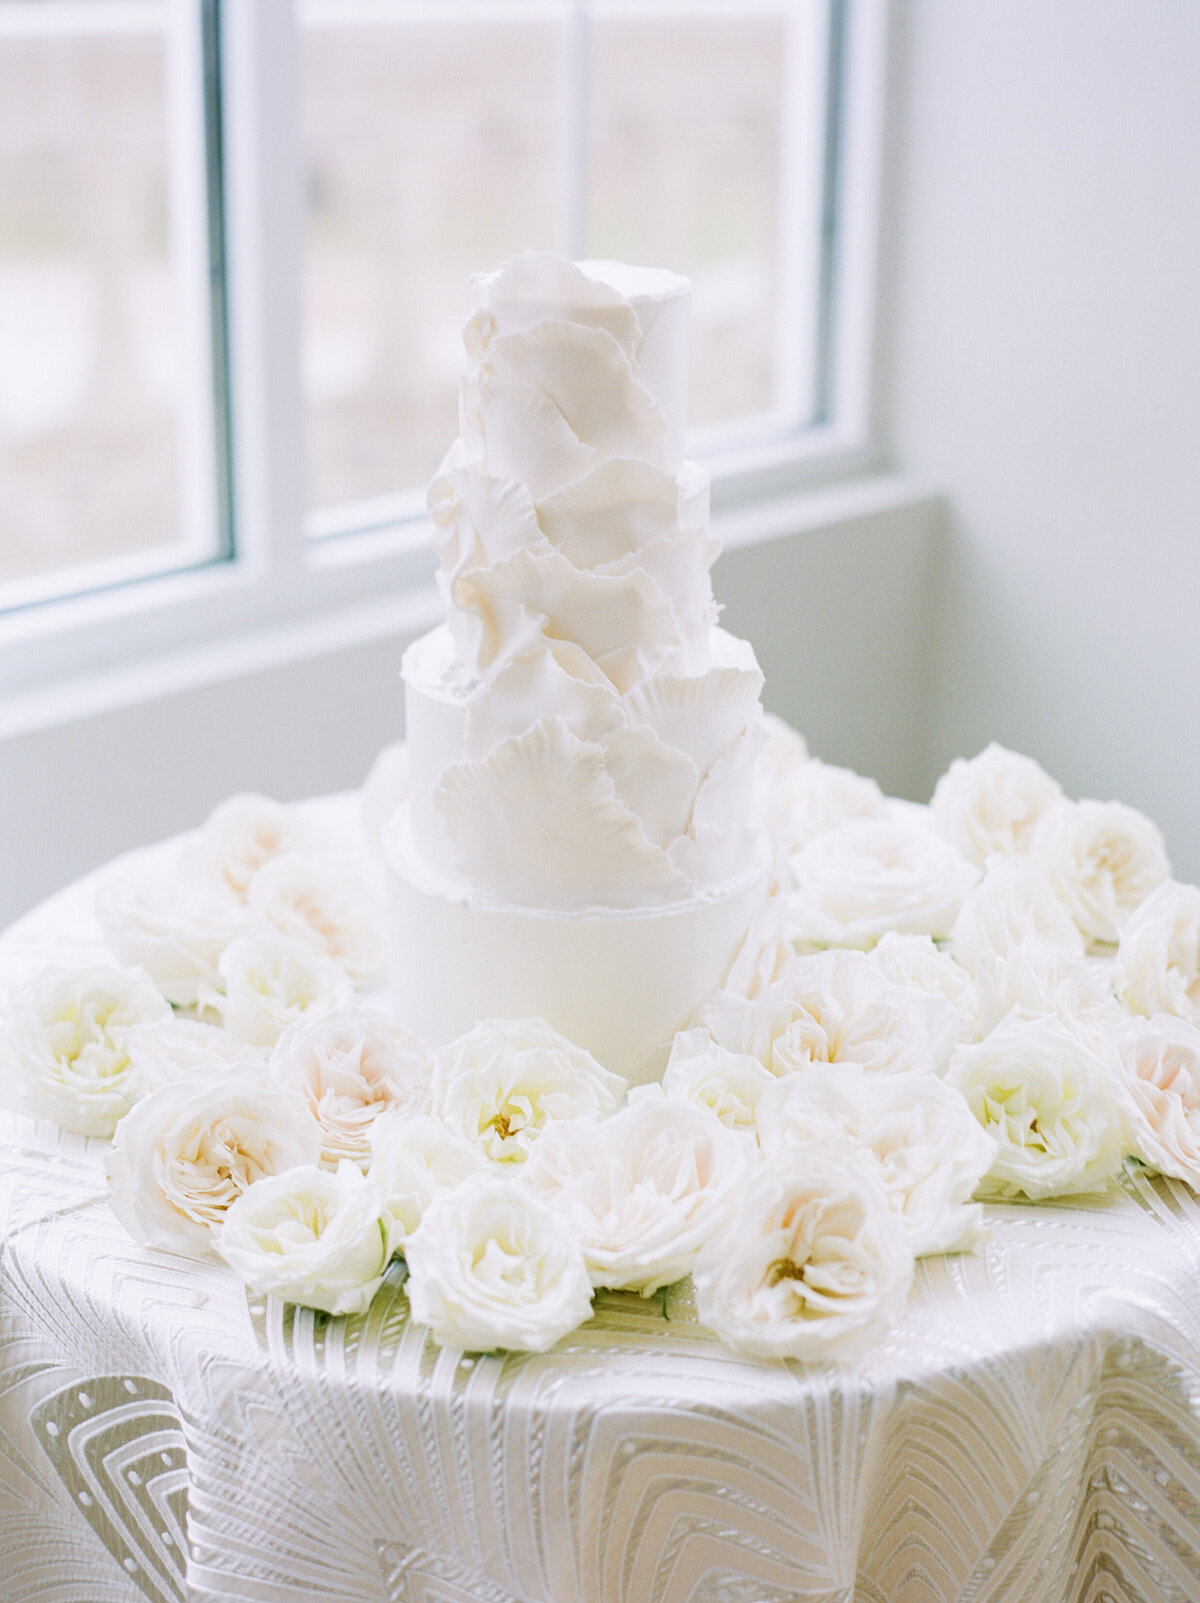 The Olana Nimbus Events Wedding Planning Modern White Ruffled Cake